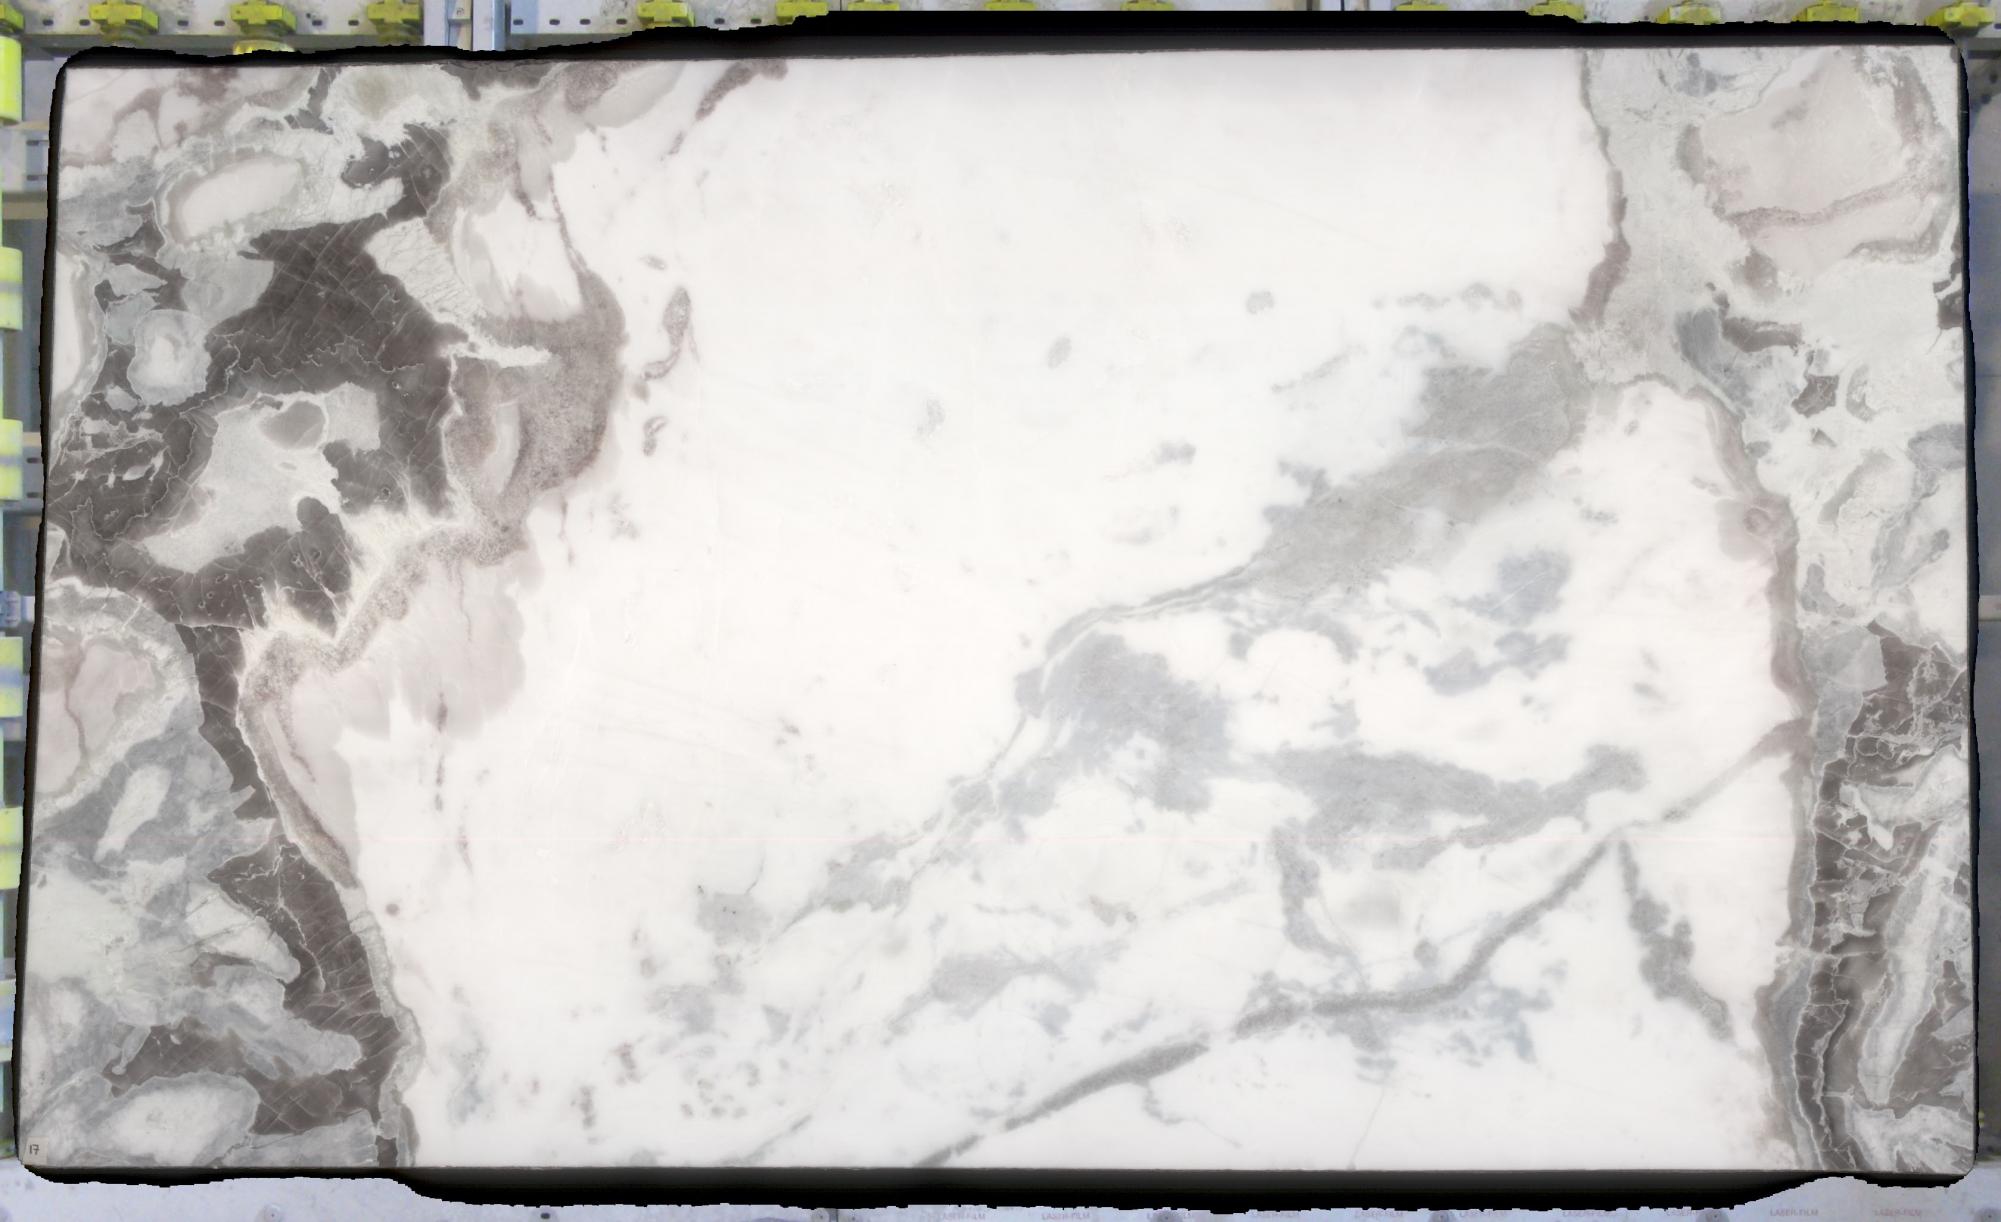 DOVER GREEN gesägte Unmaßplatten C0167 aus Natur Marmor , Slab #17: Lieferung Veneto, Italien 